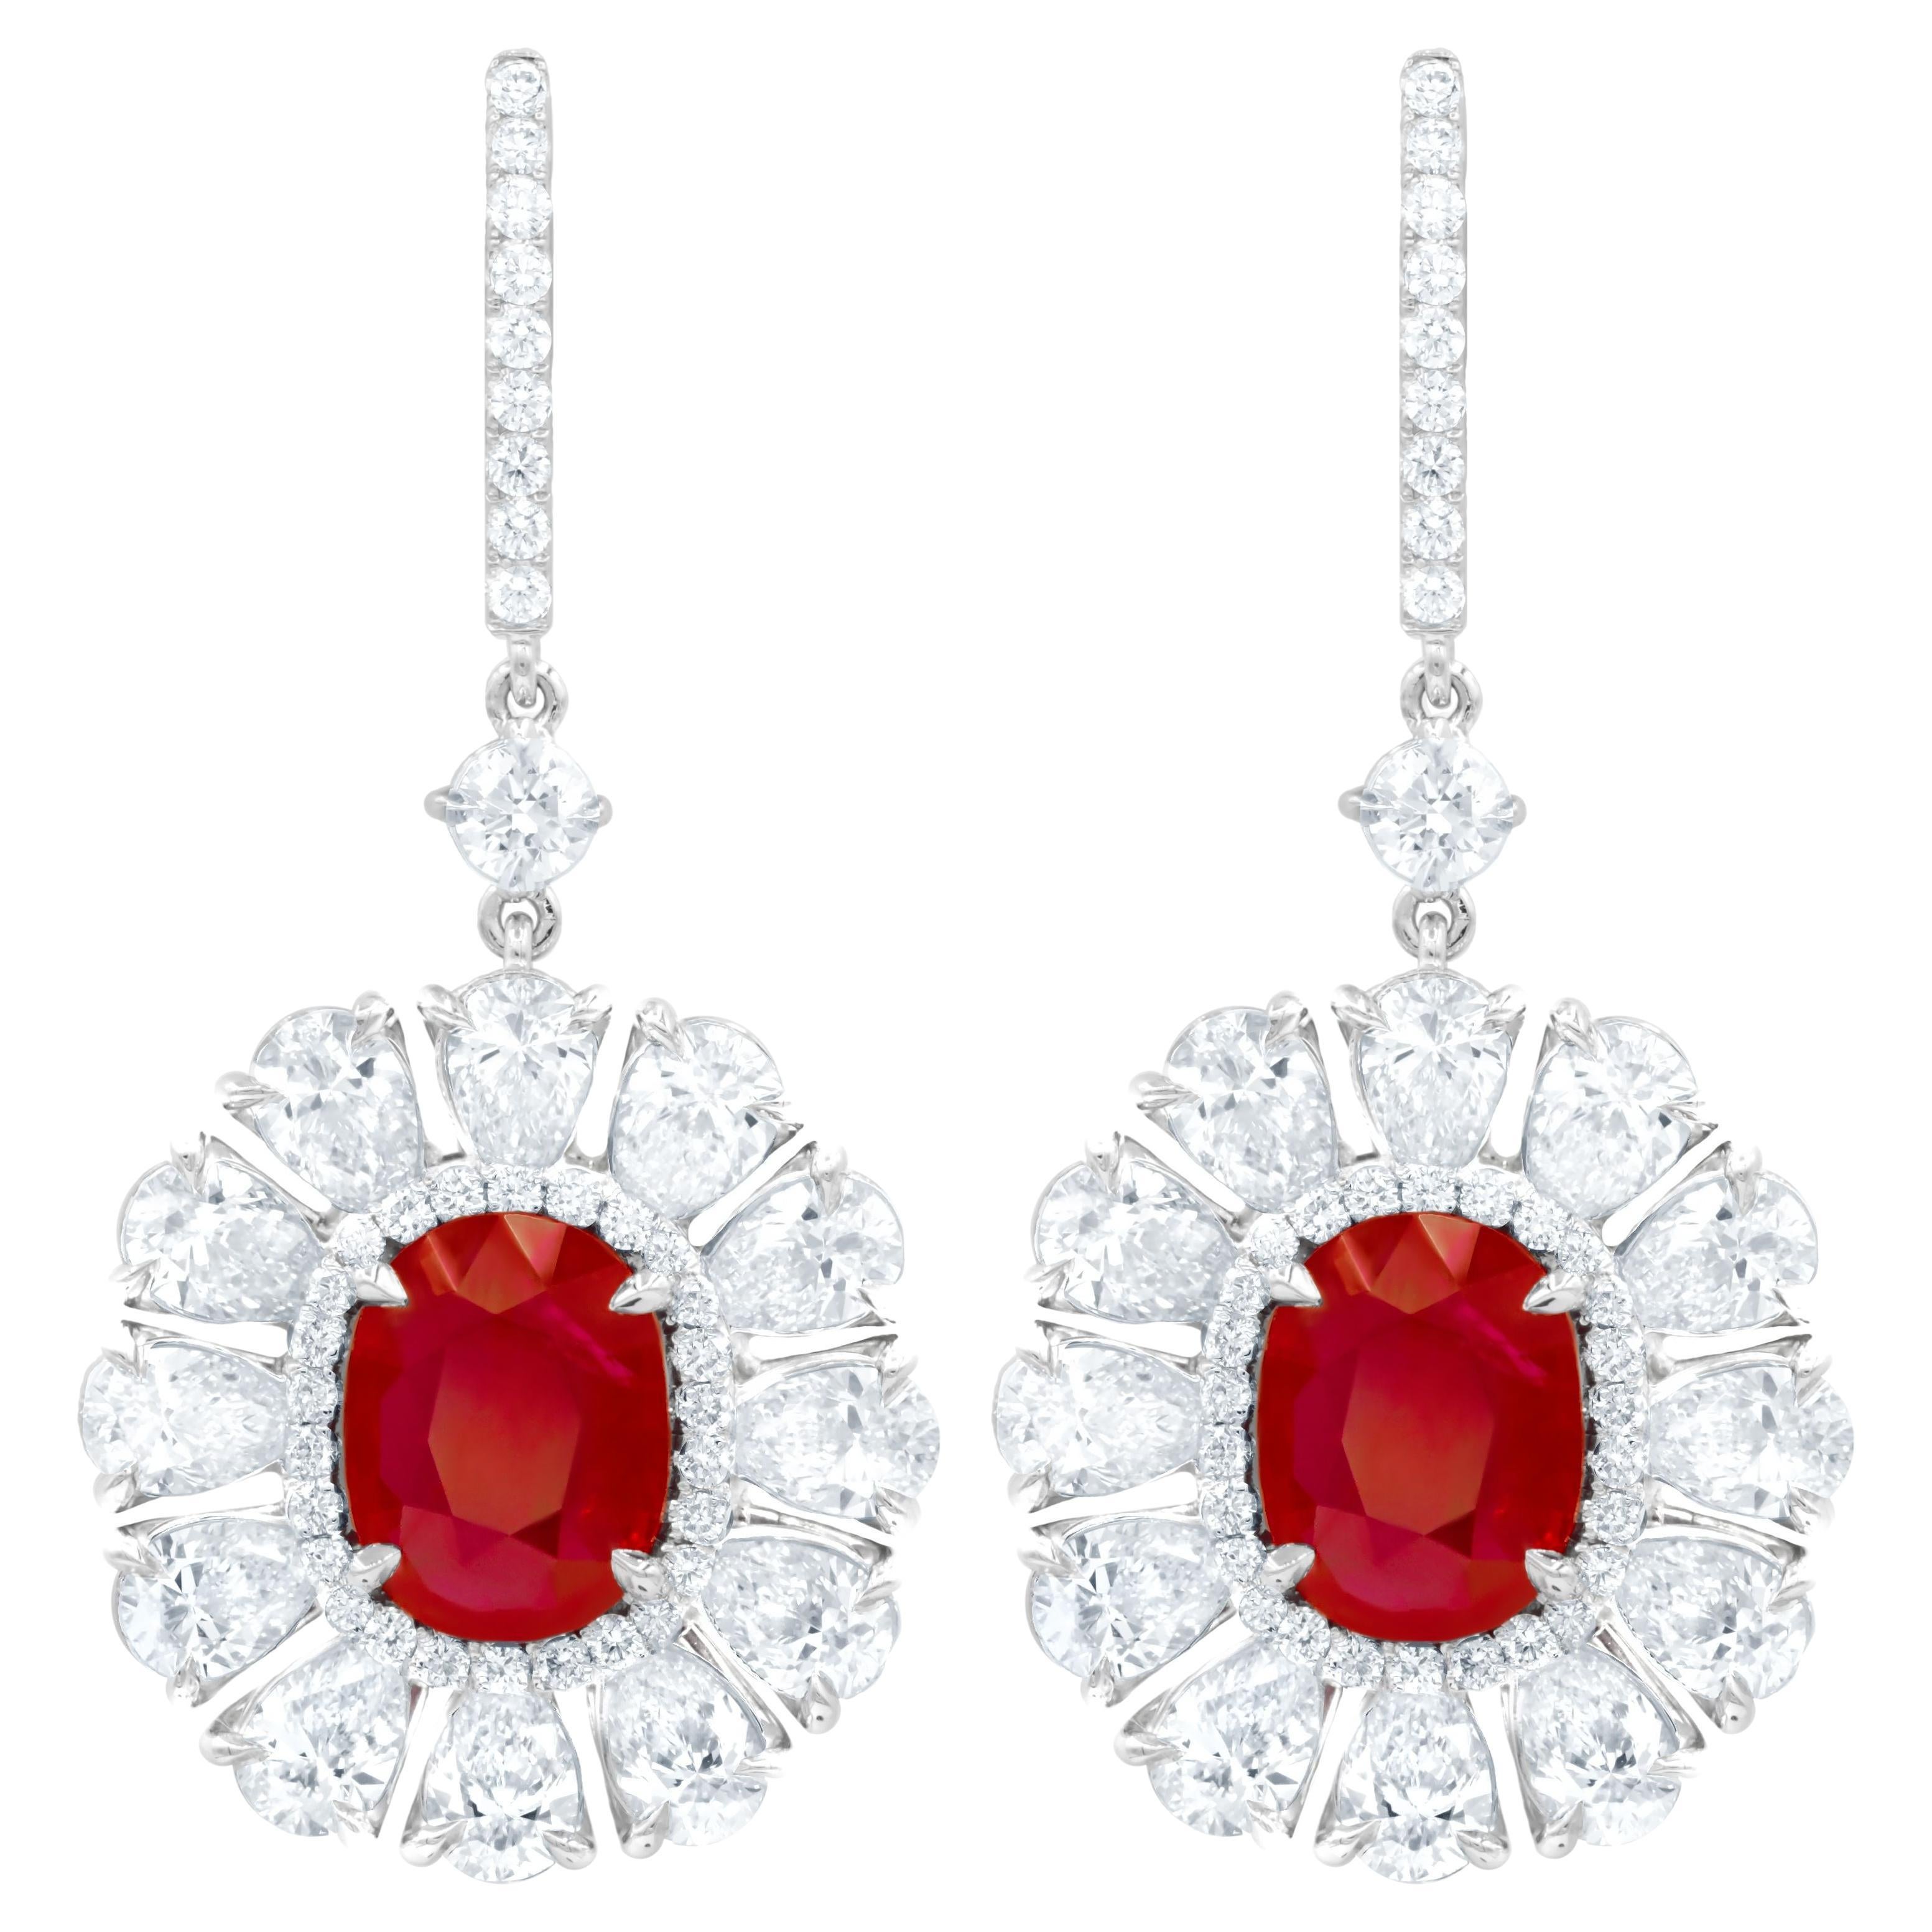 Diana M. 6.69 Carat Ruby Set in Diamond Halo Flower Shaped Earrings